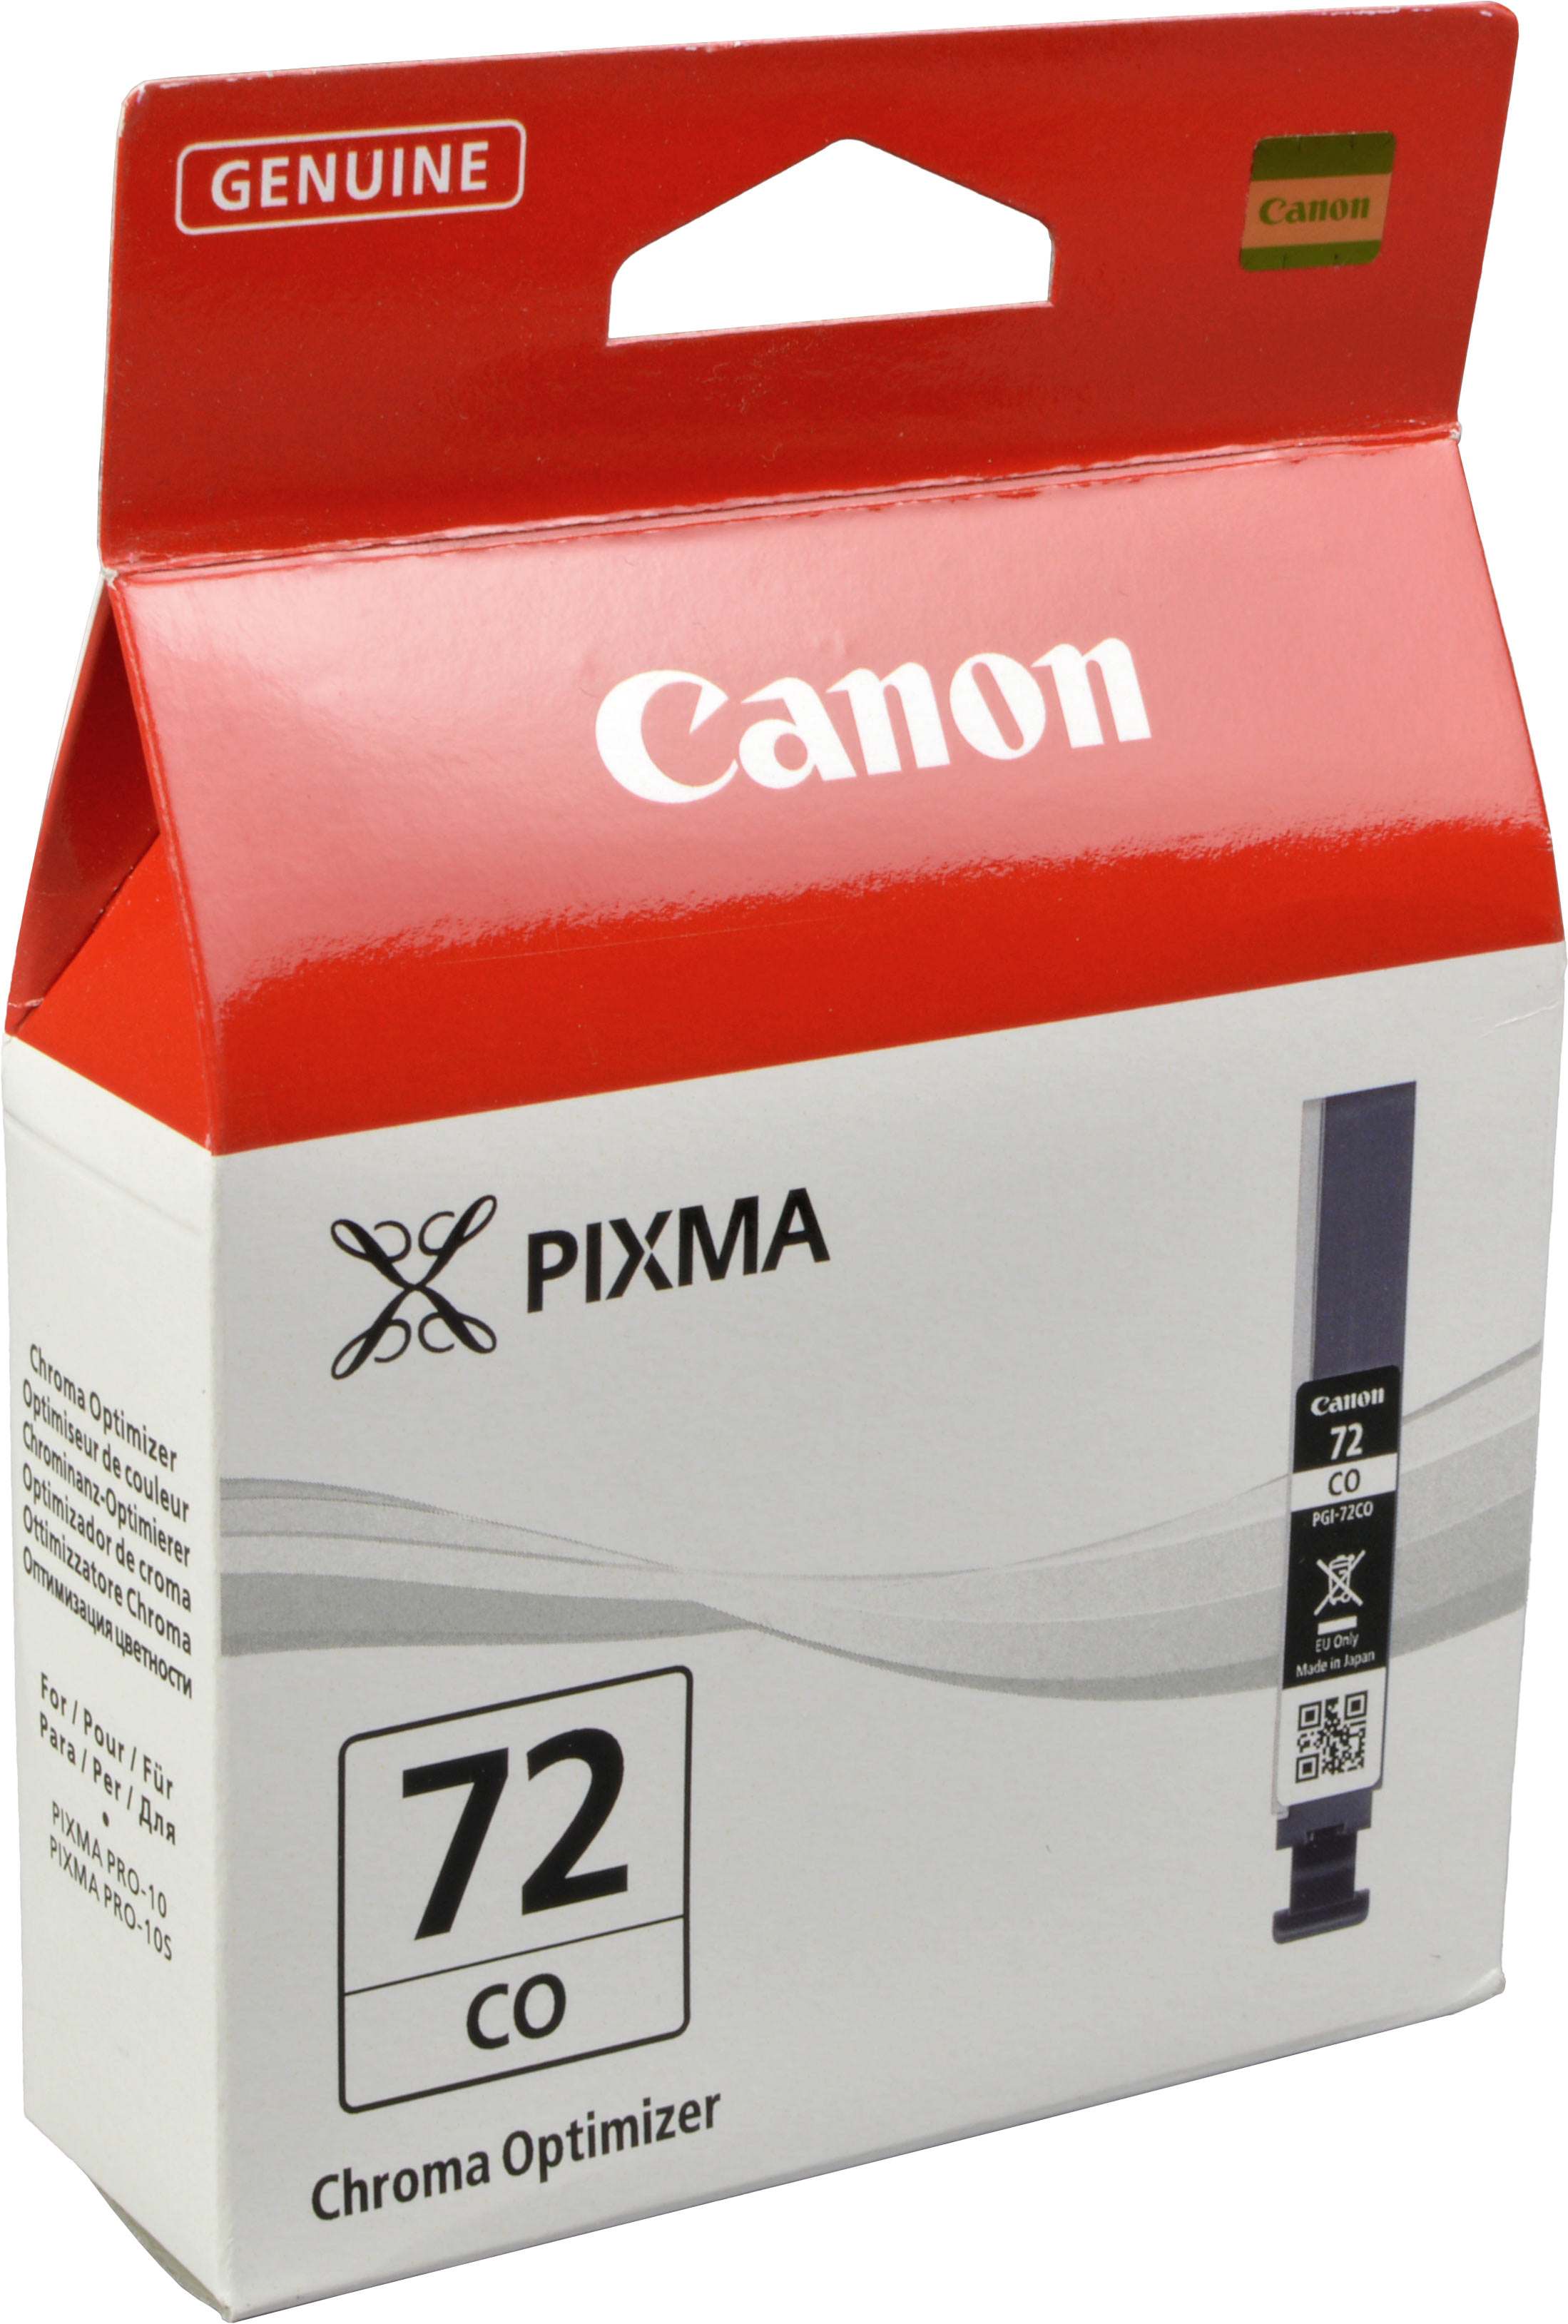 Canon Tinte 6411B001  PGI-72CO  chroma optimizer